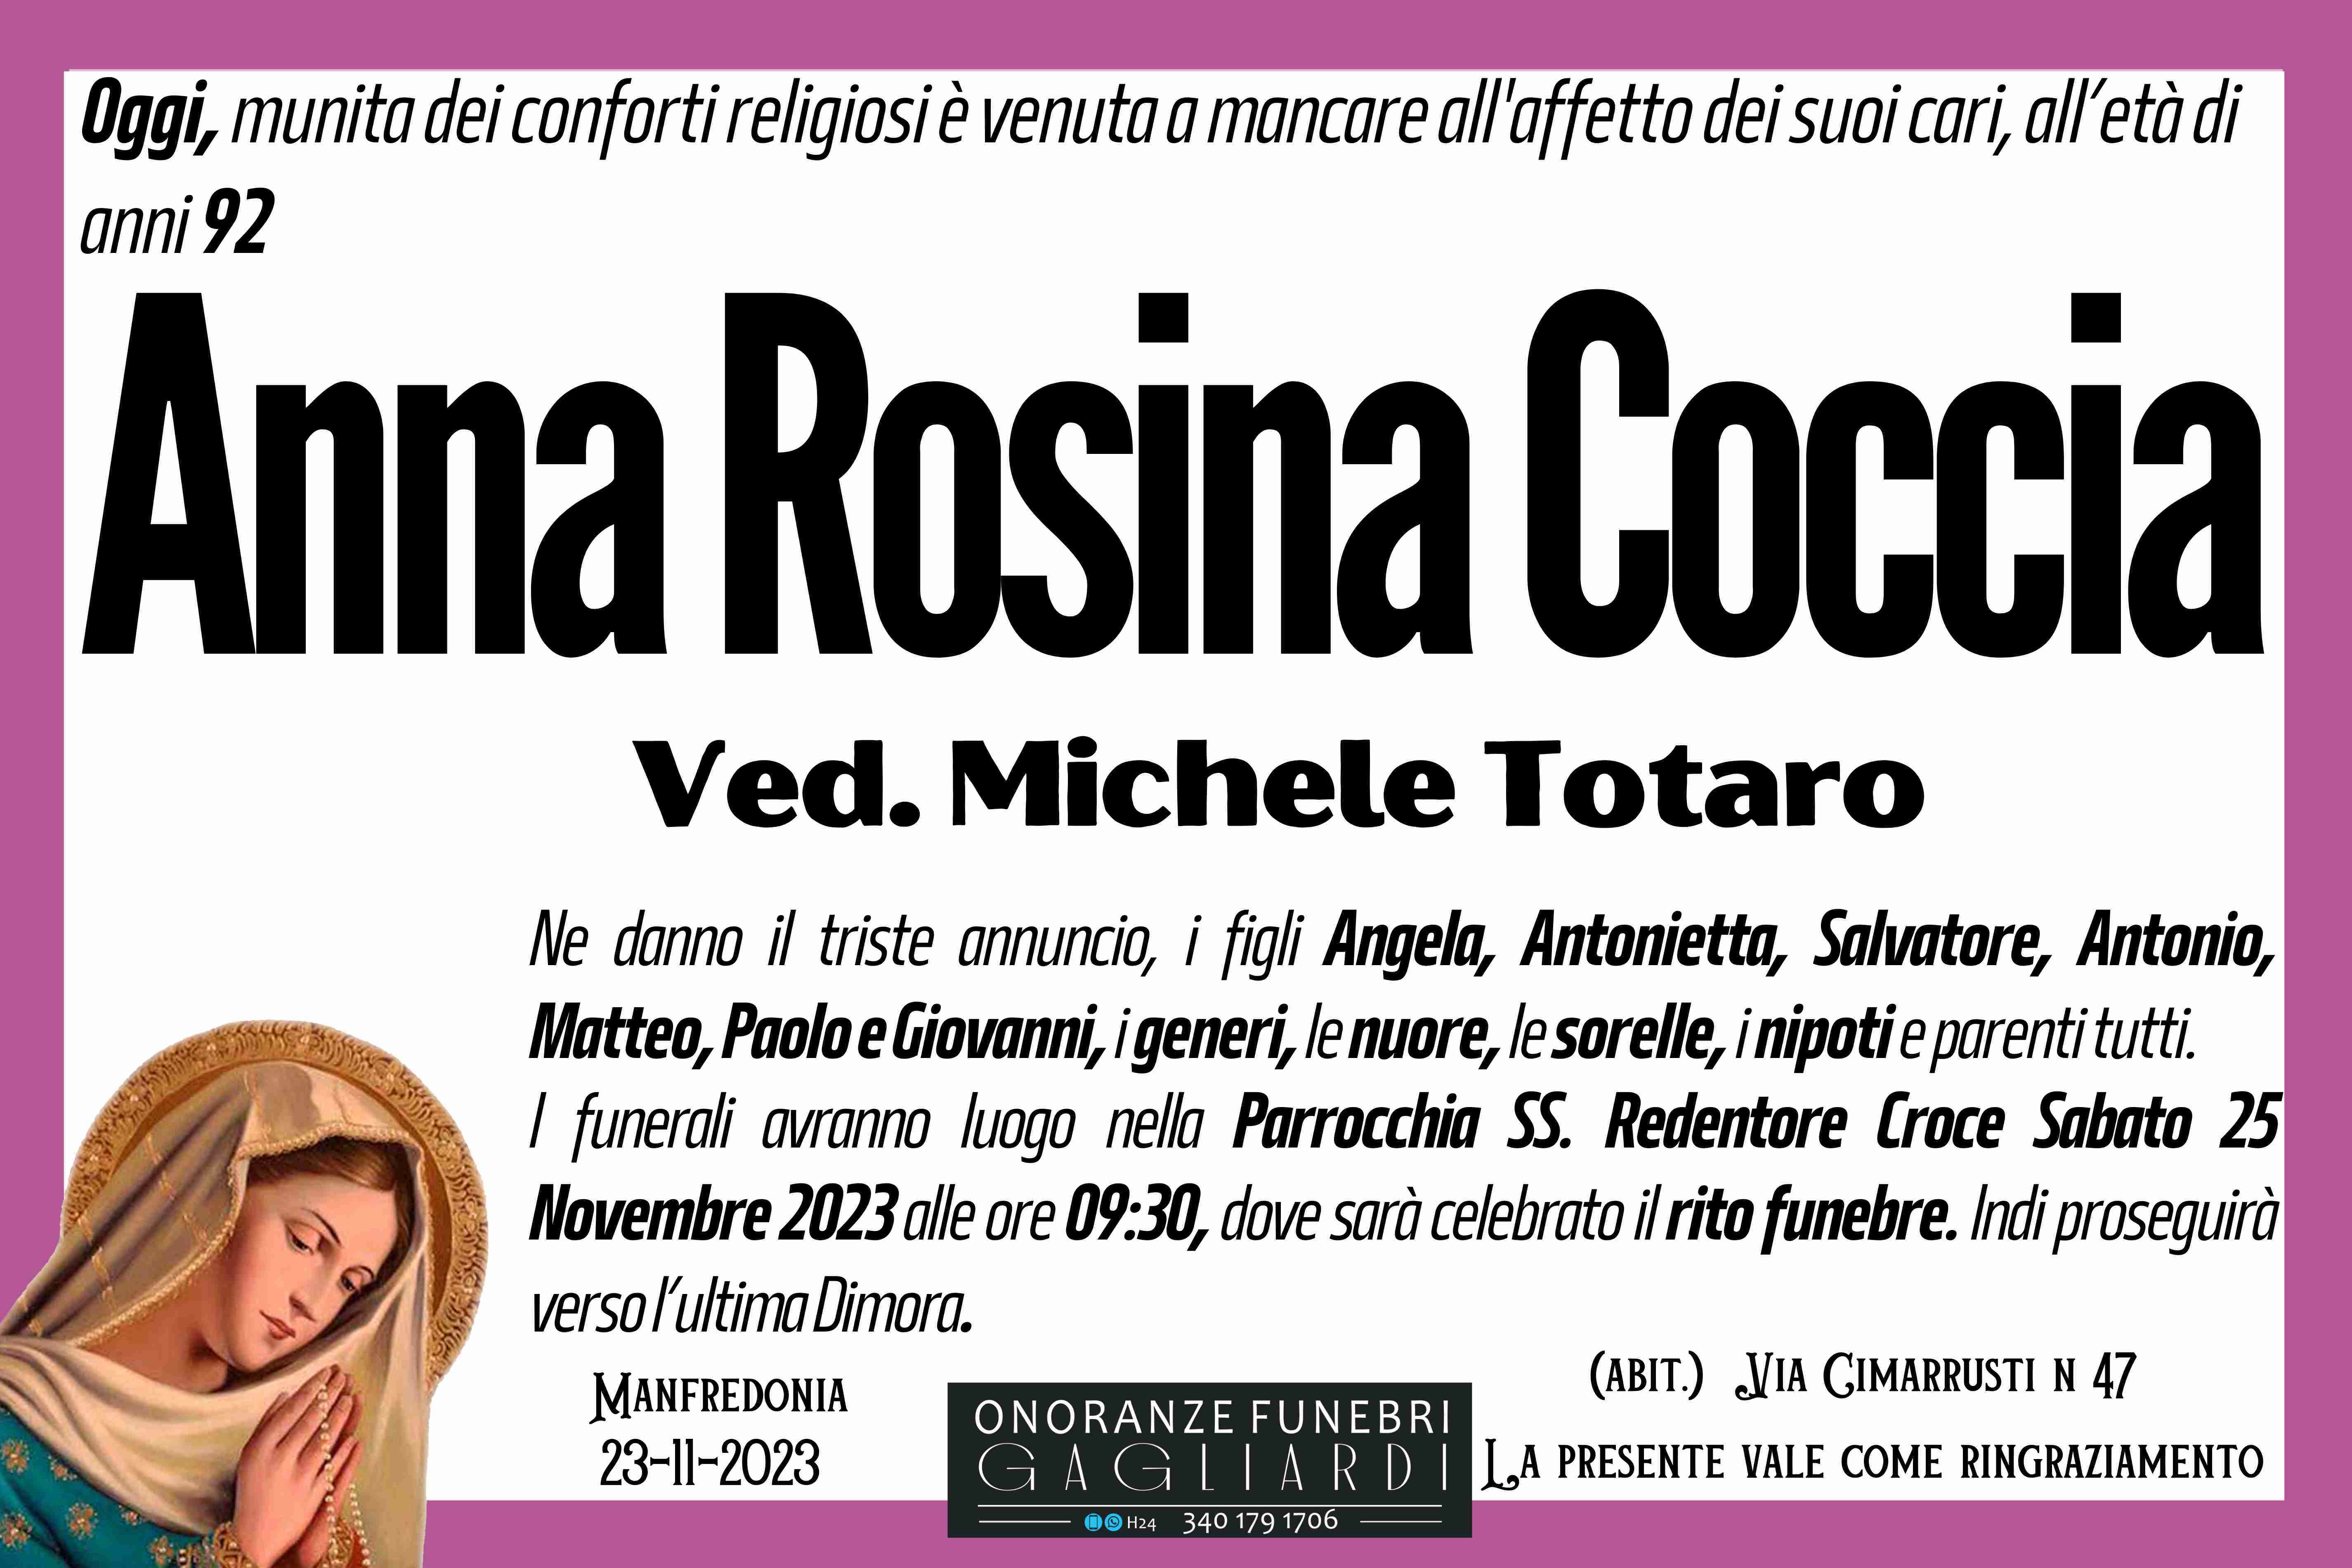 Anna Rosina Coccia